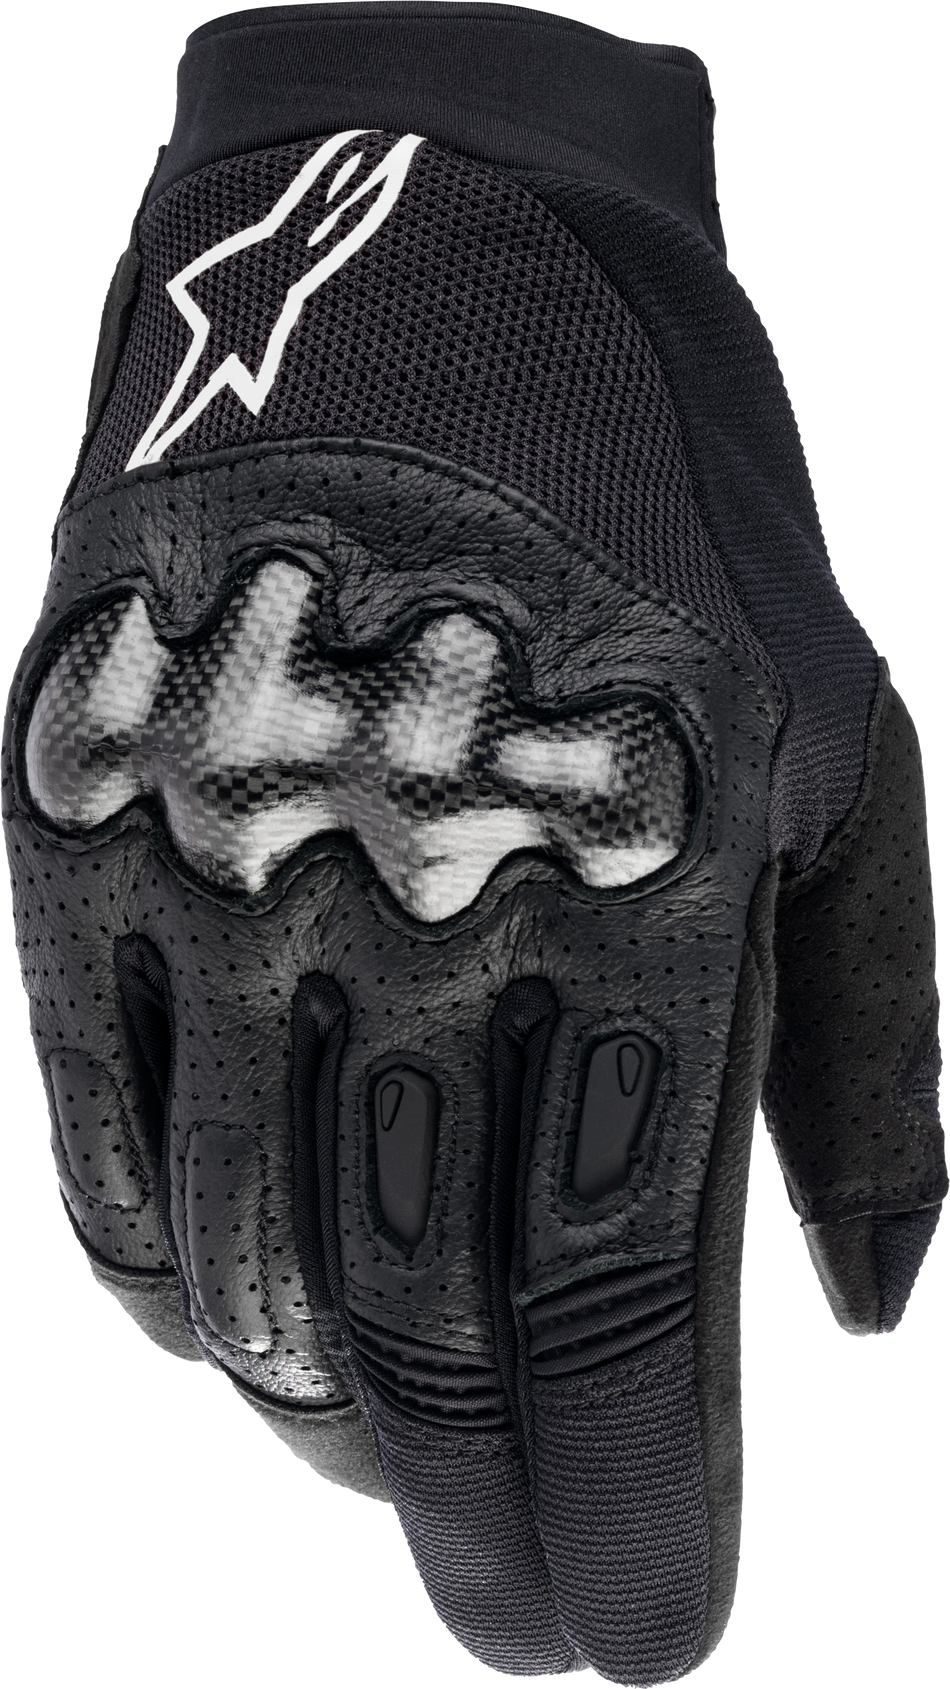 ALPINESTARS Megawatt Gloves Black Md 3565023-10-MD